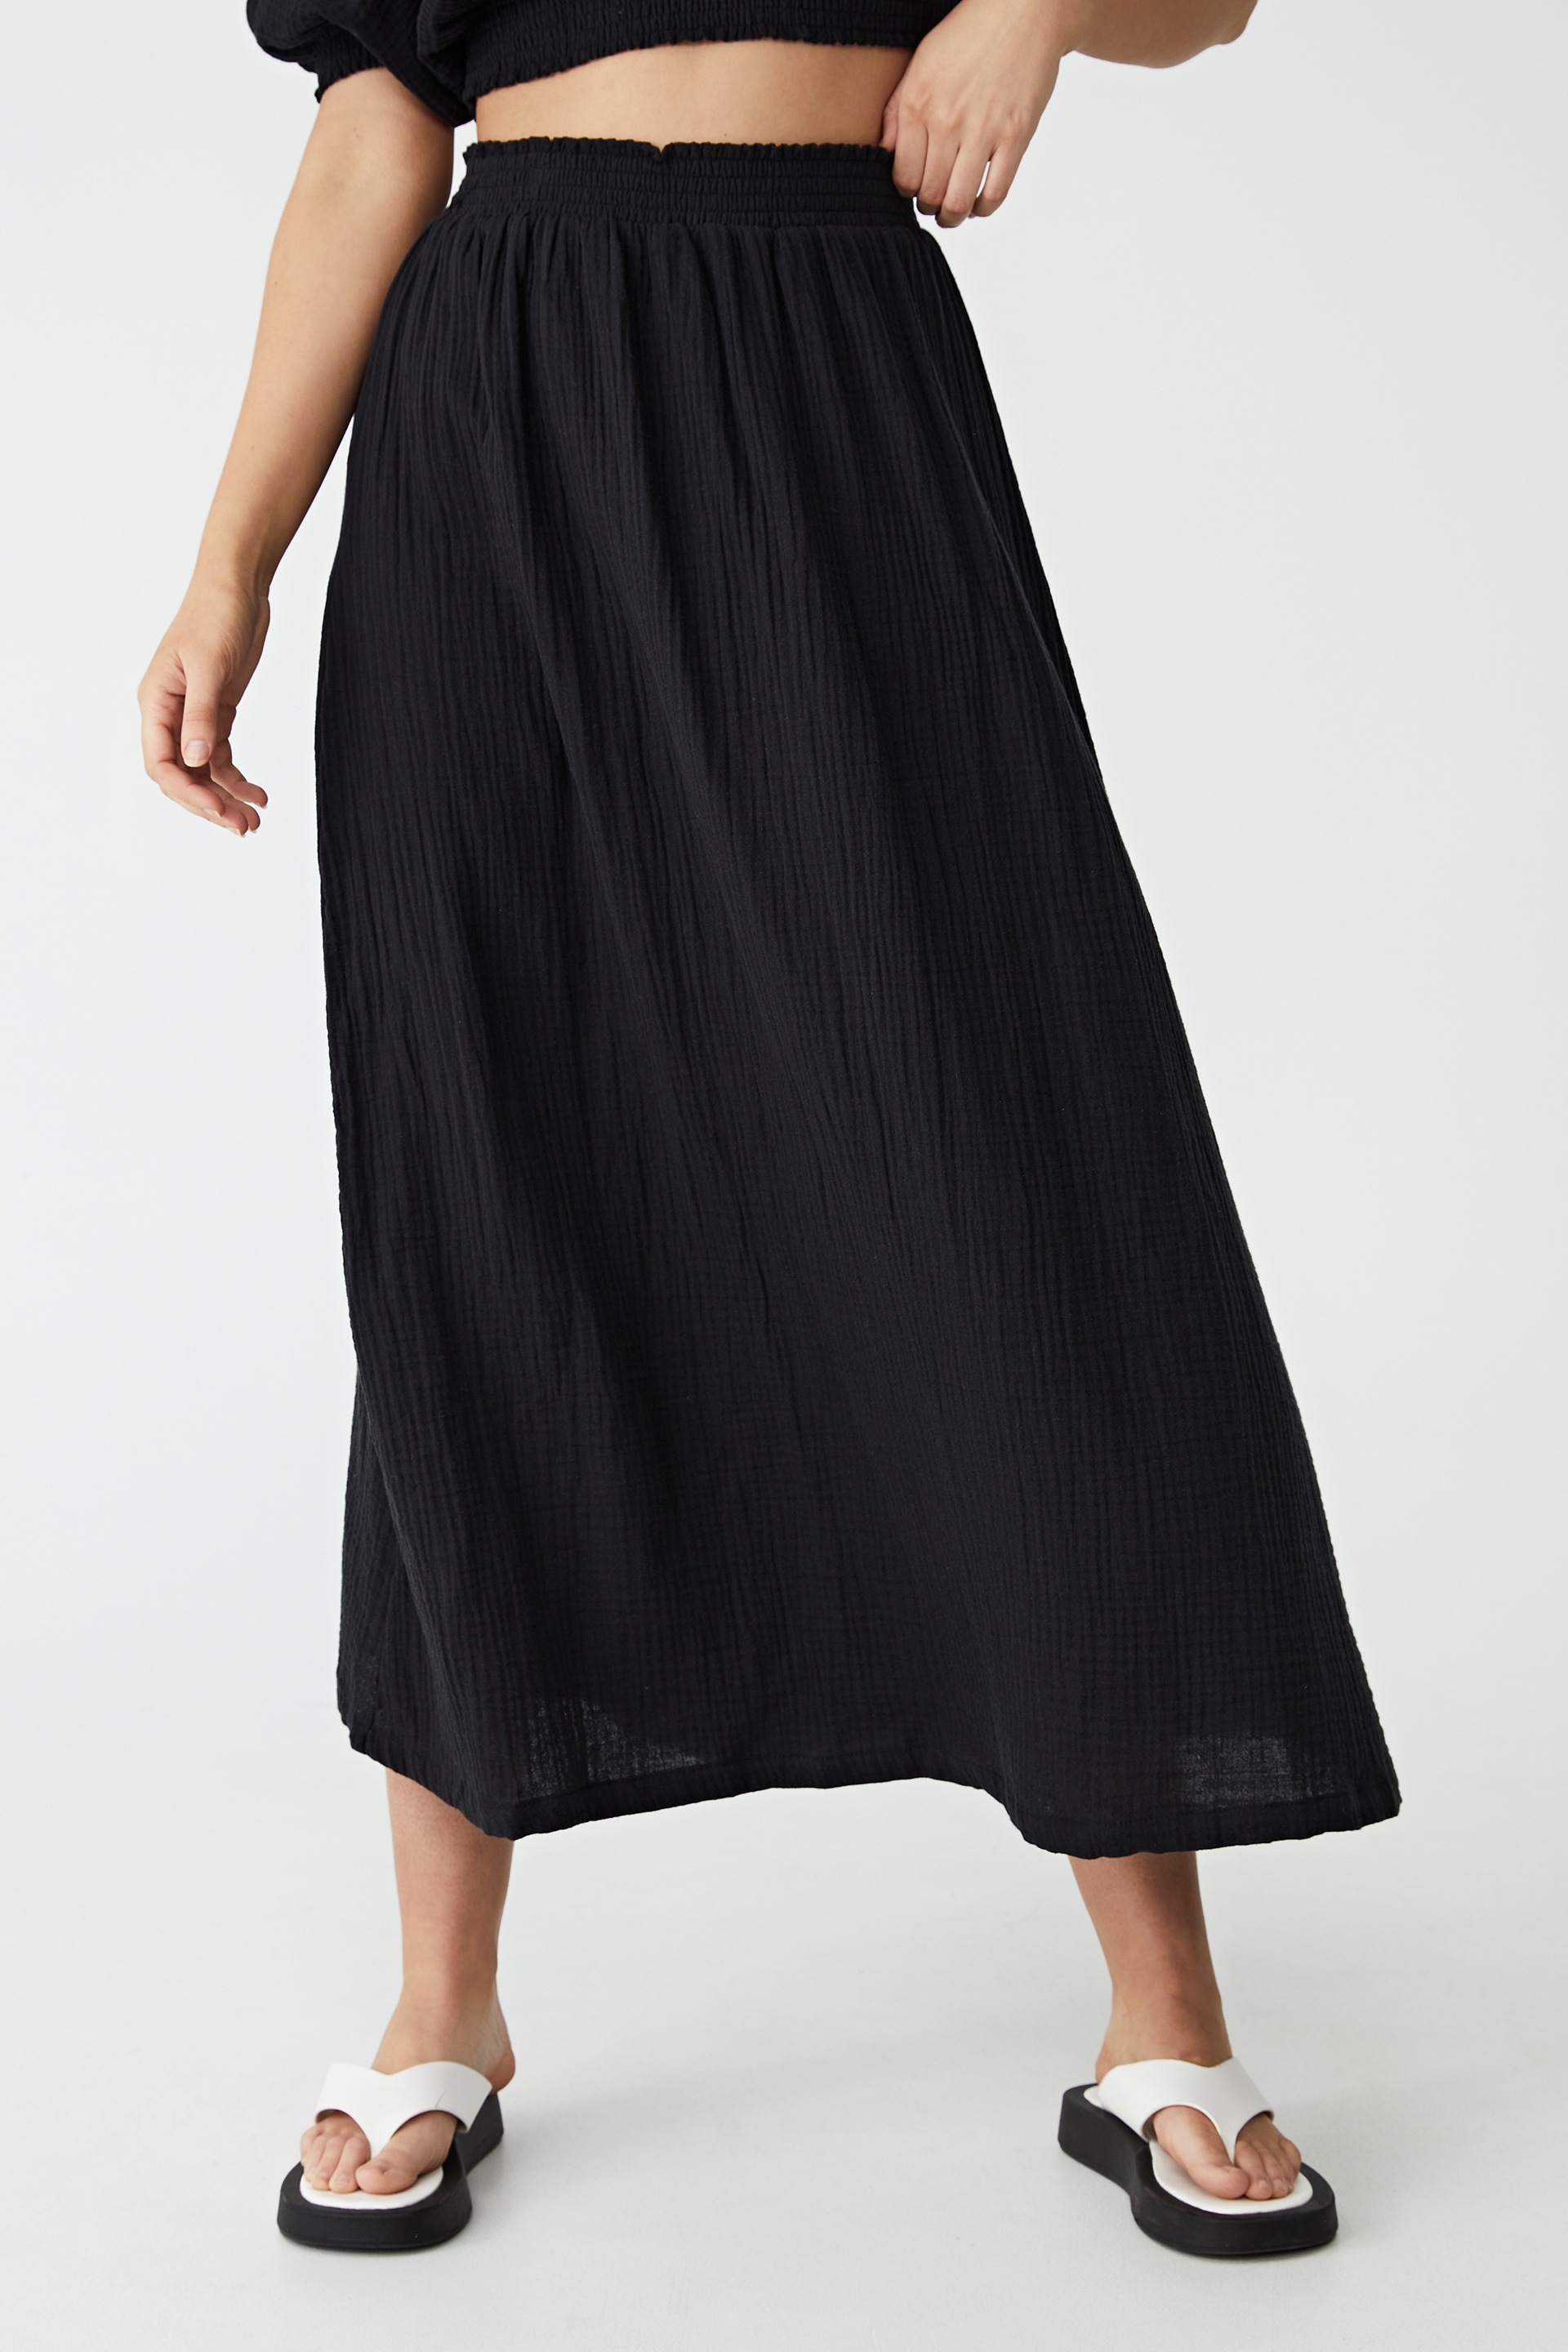 Cotton On Women - Woven Riviera Maxi Skirt - Black